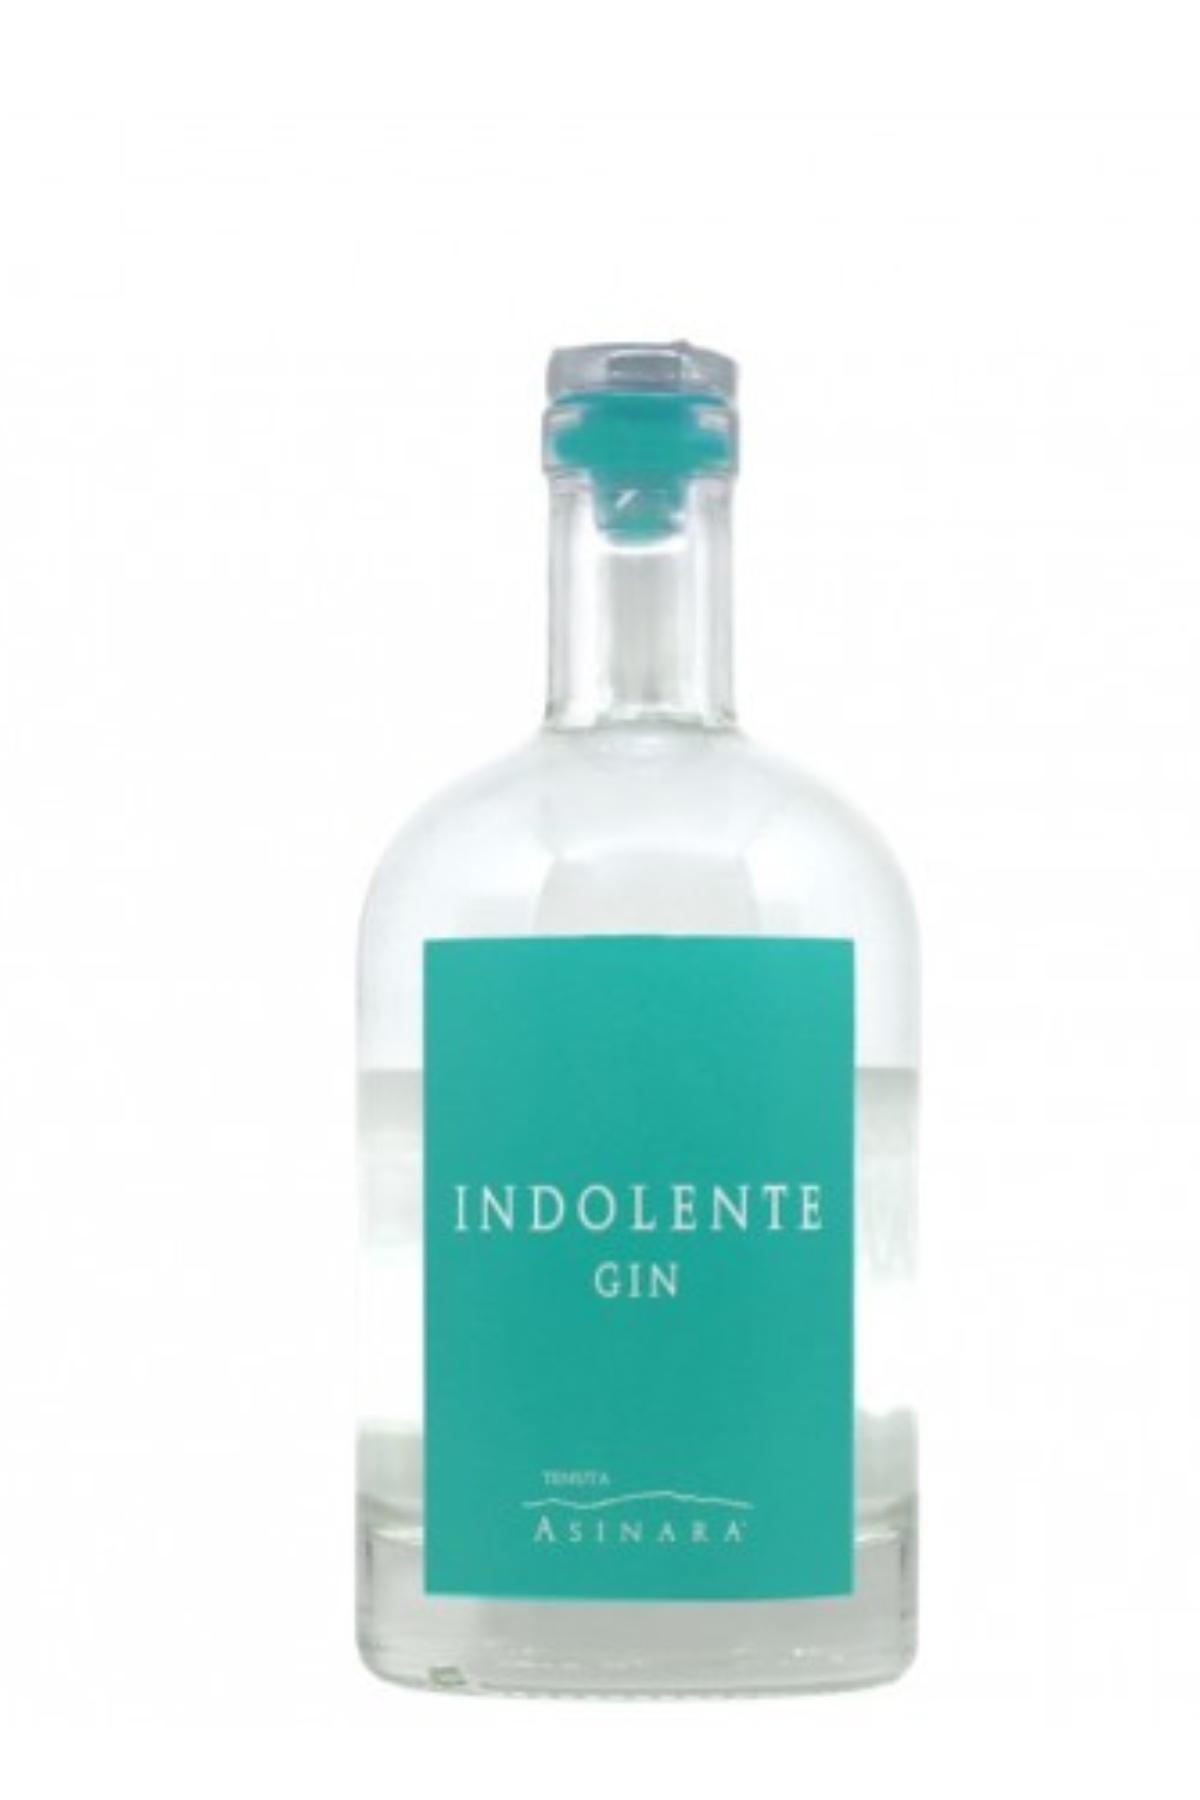 "Indolente Gin" - Tenuta Asinara